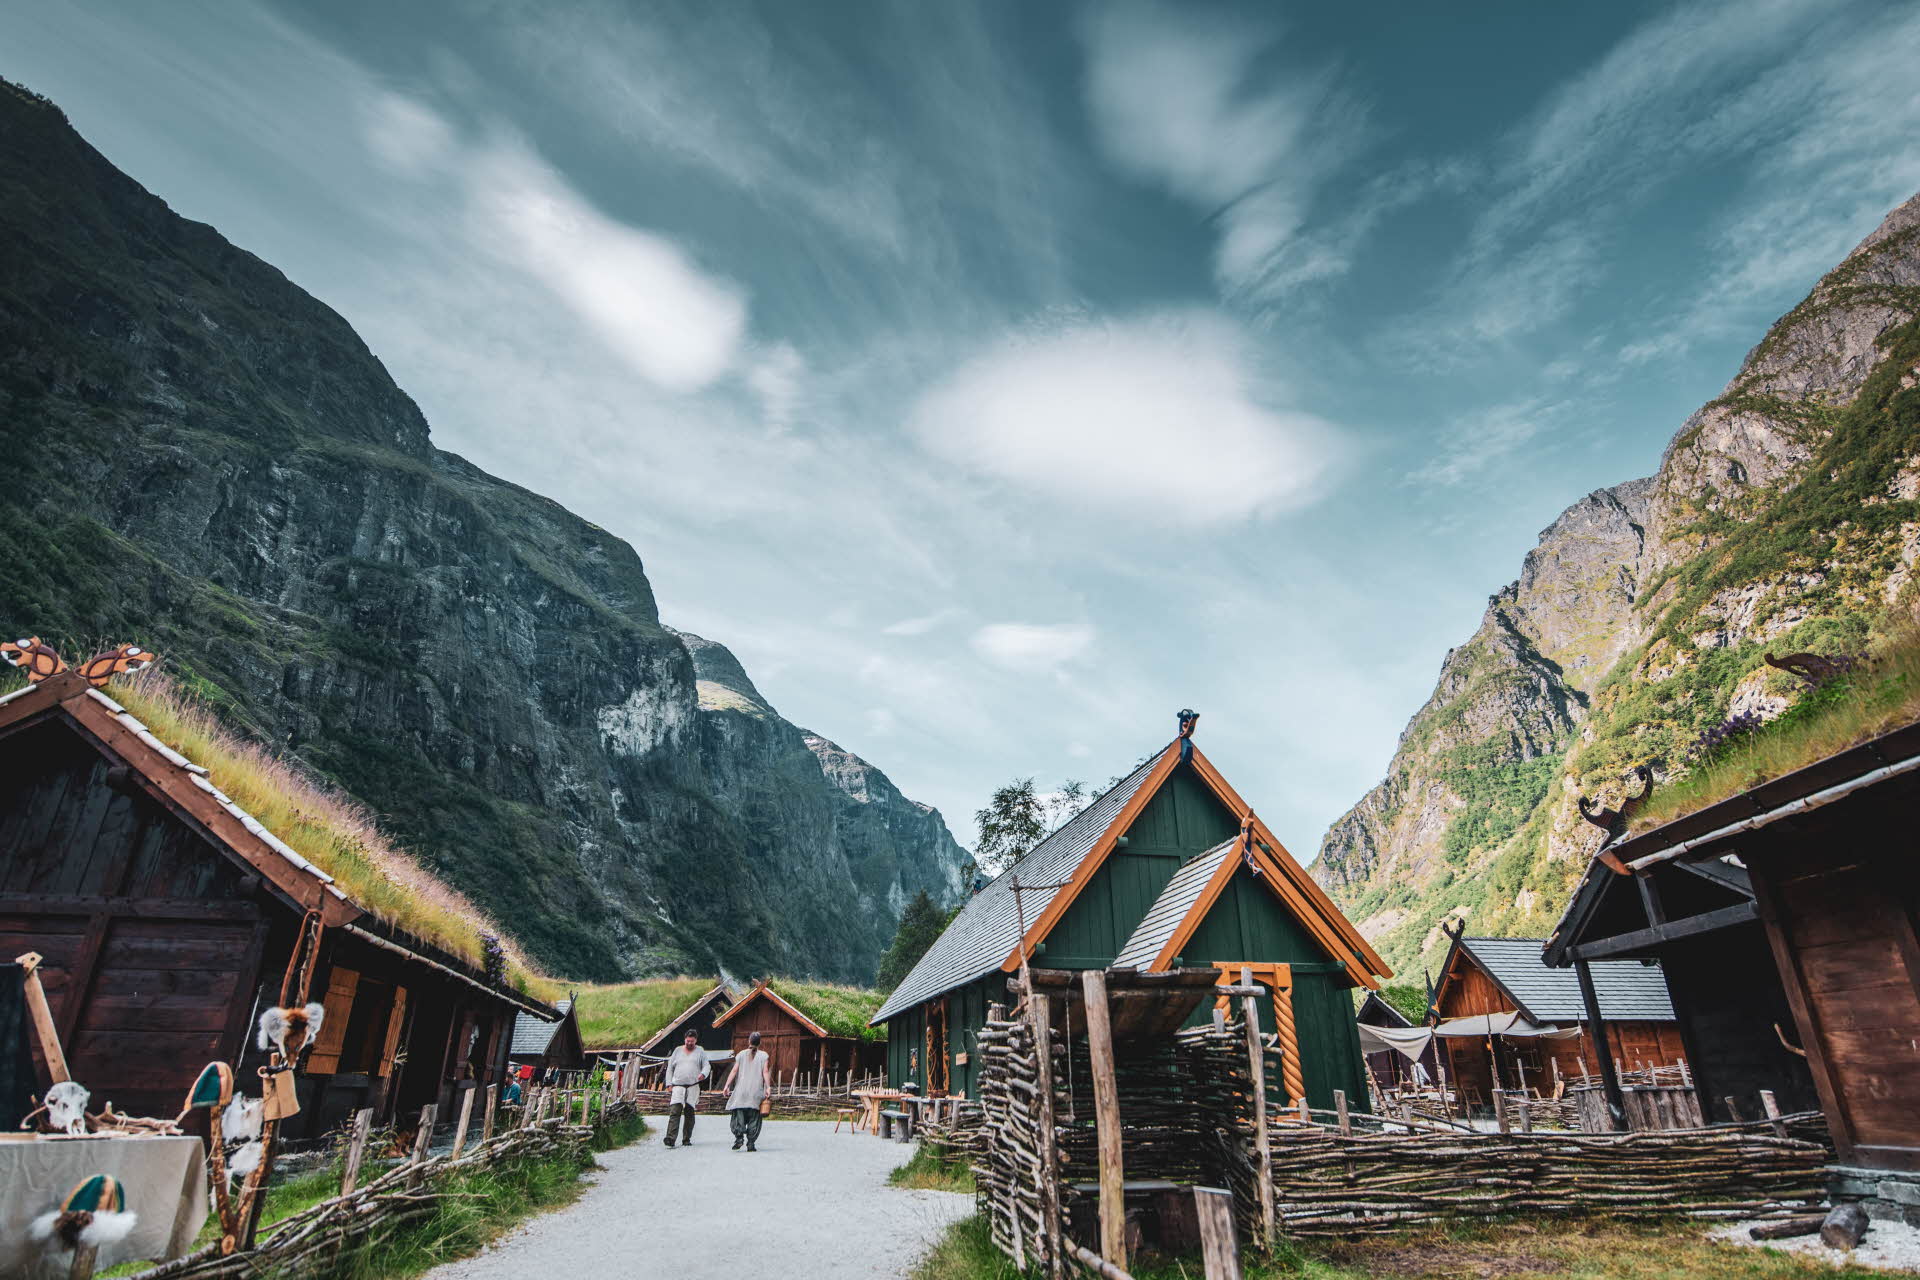 Bâtiments en bois brun, vert et jaune dans la Vallée viking. Deux hommes marchent sur un chemin.